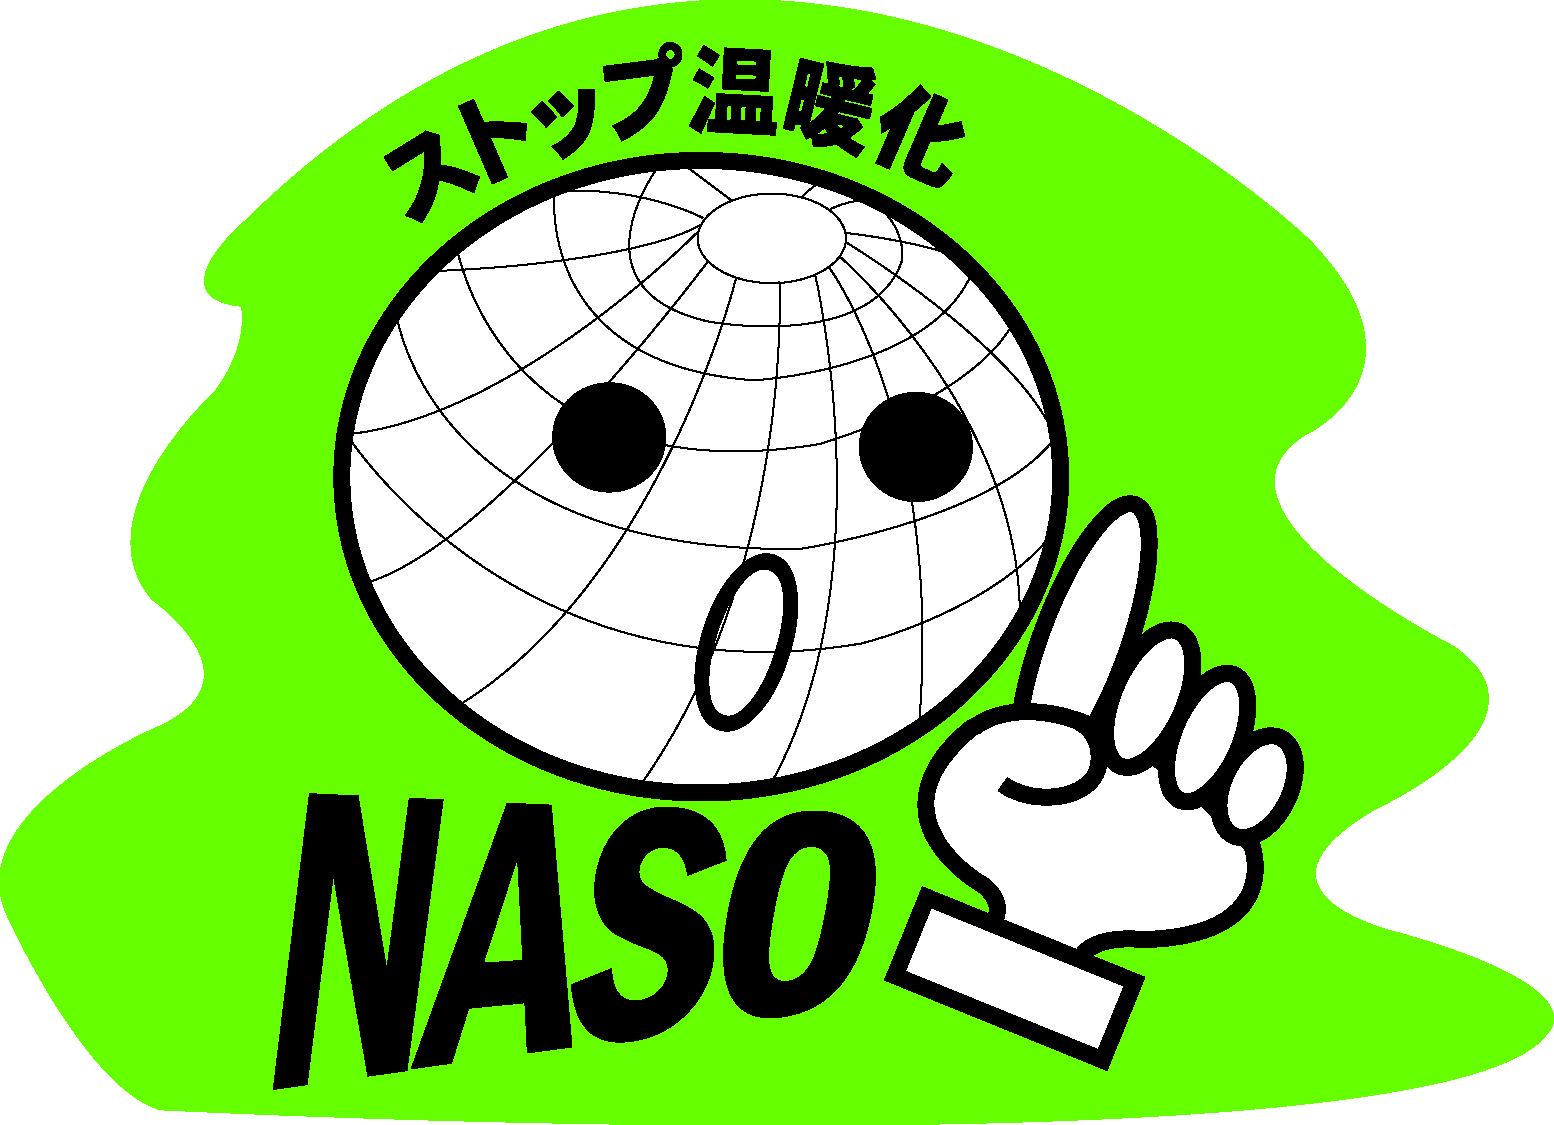 特定非営利活動法人 奈良ストップ温暖化の会